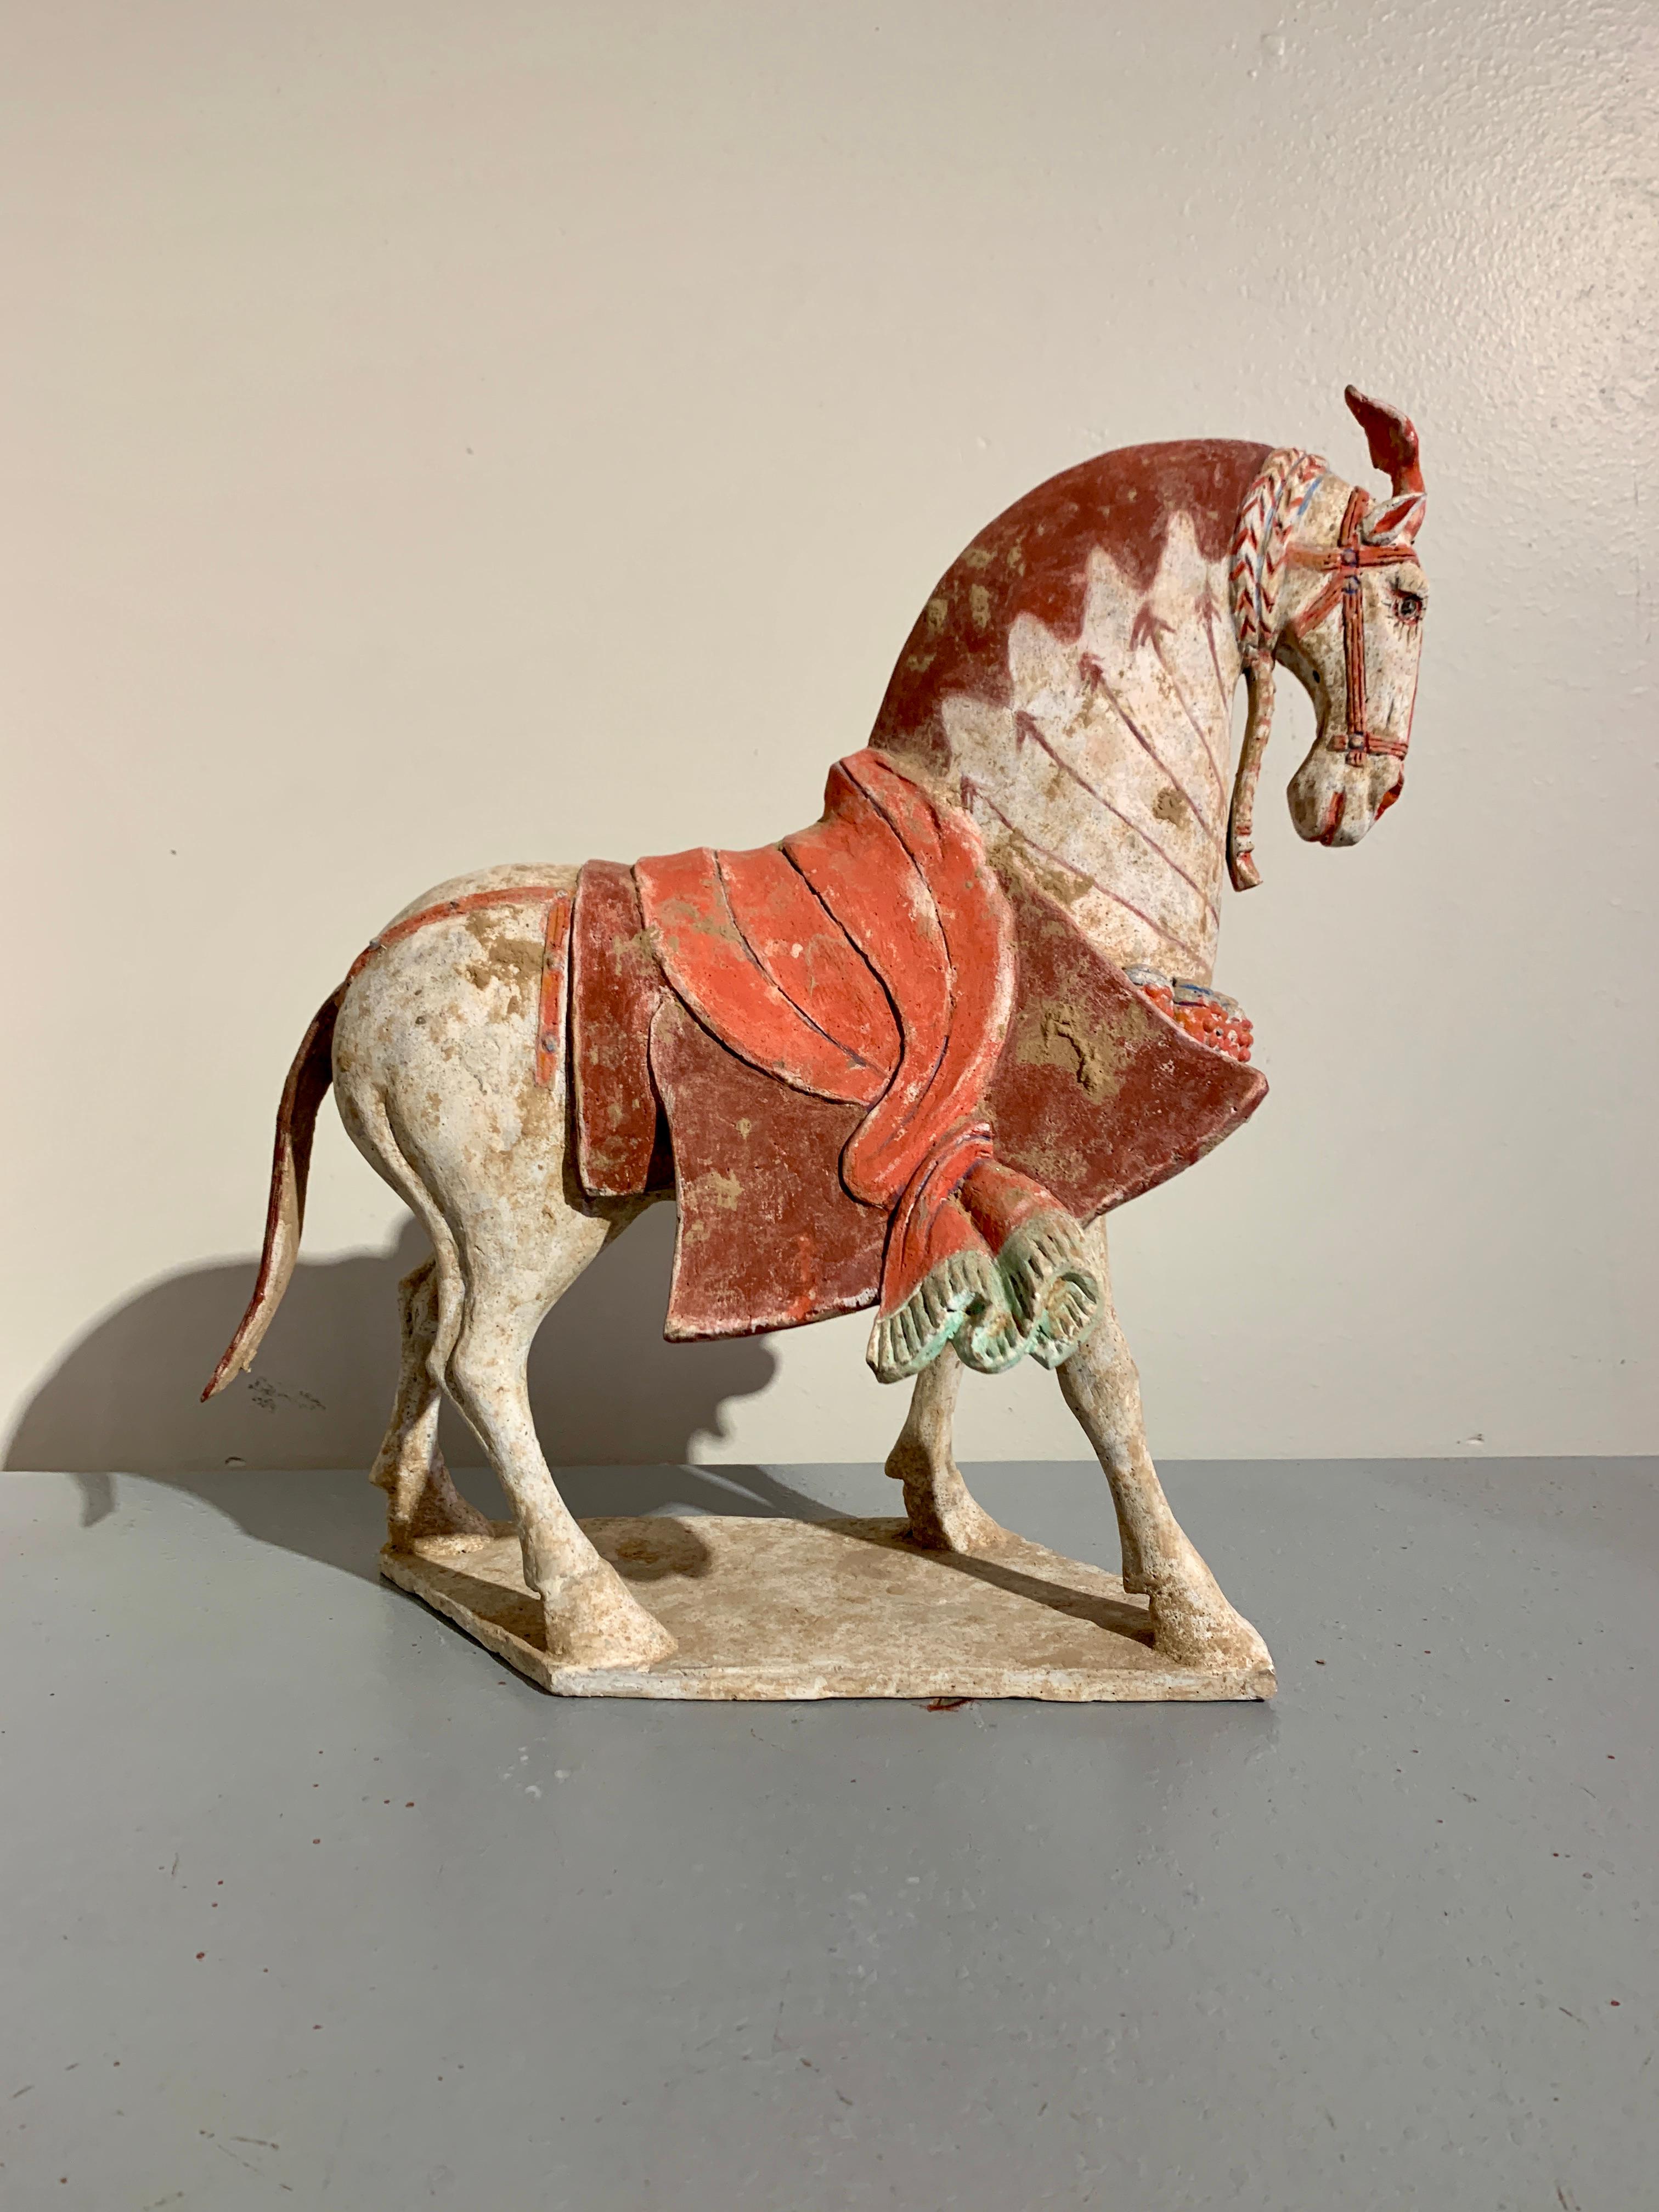 Un magnifique modèle de poterie peinte chinoise représentant un cheval caparaçonné marchant à grands pas, dynastie Qi du Nord (550 à 577 ADS), Chine, TL testé par Oxford Laboratories. 

Le noble cheval est représenté à mi-course sur une base